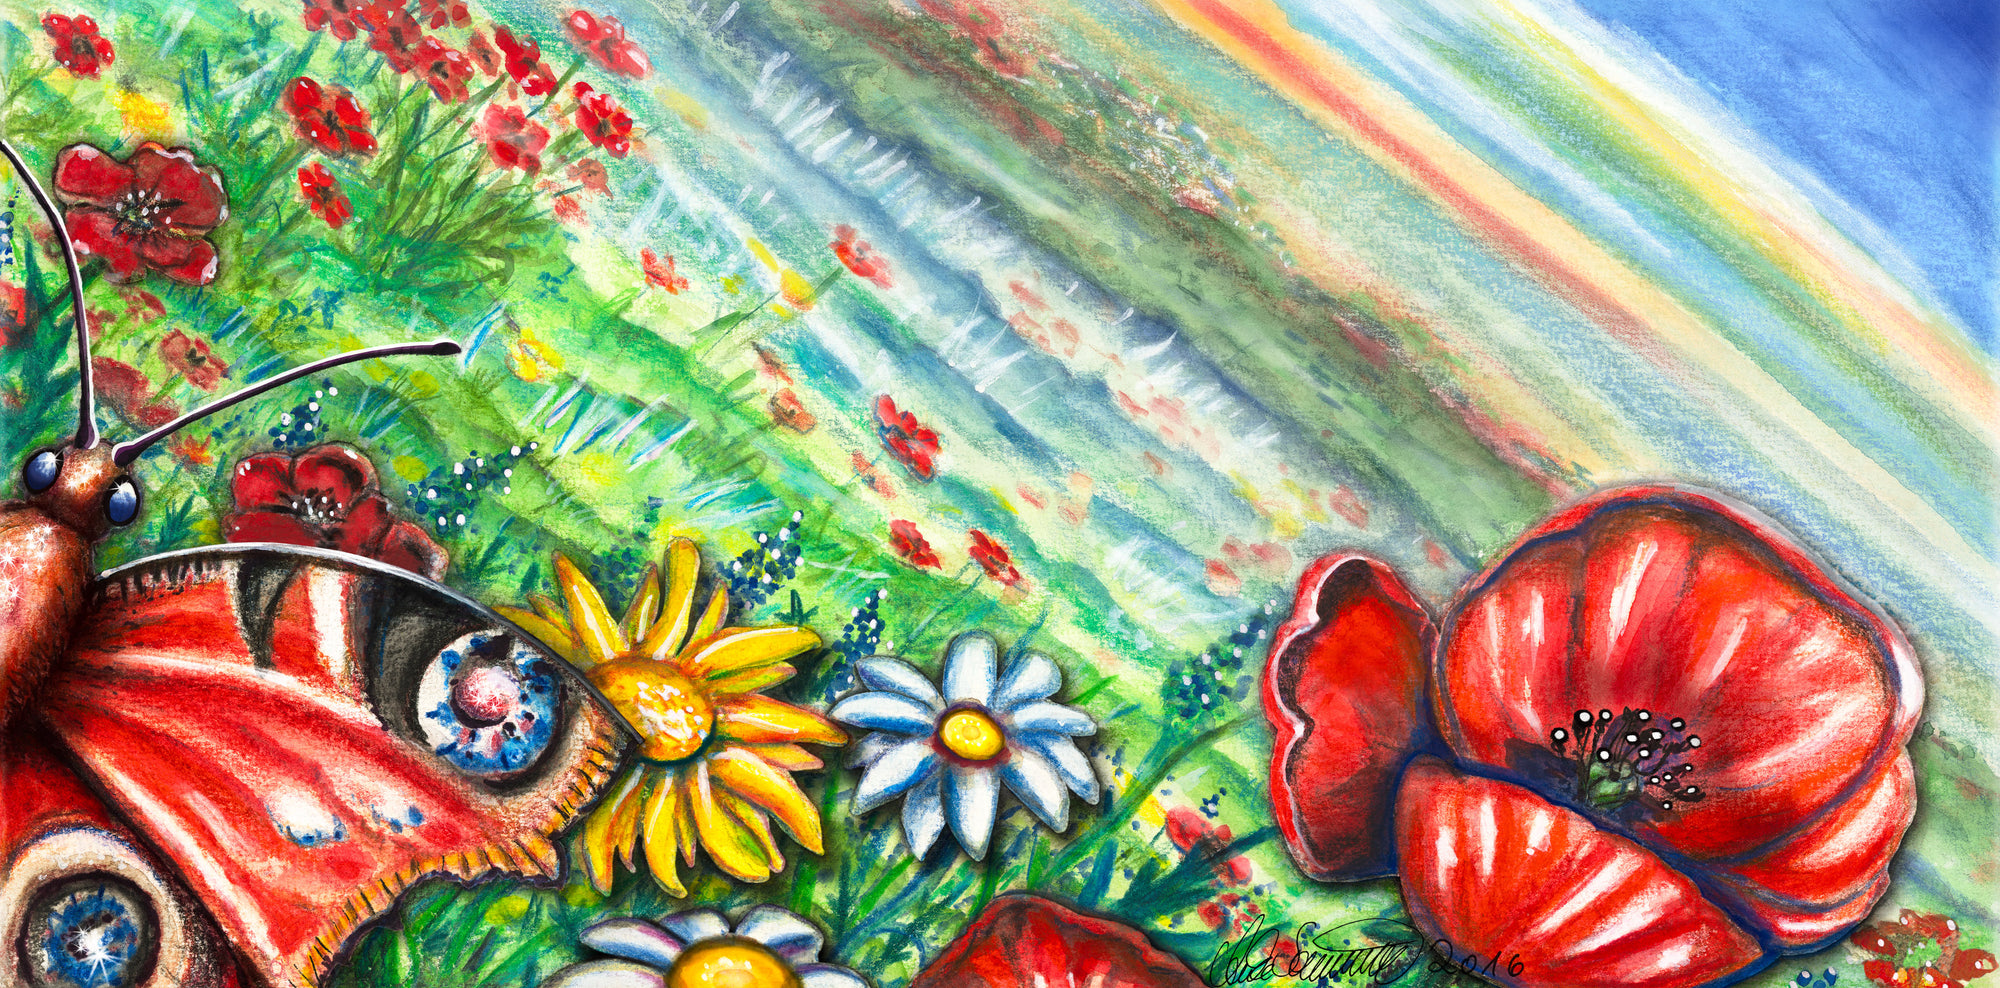 Kunstdruck auf Alu Dibond "Blumenwiese"